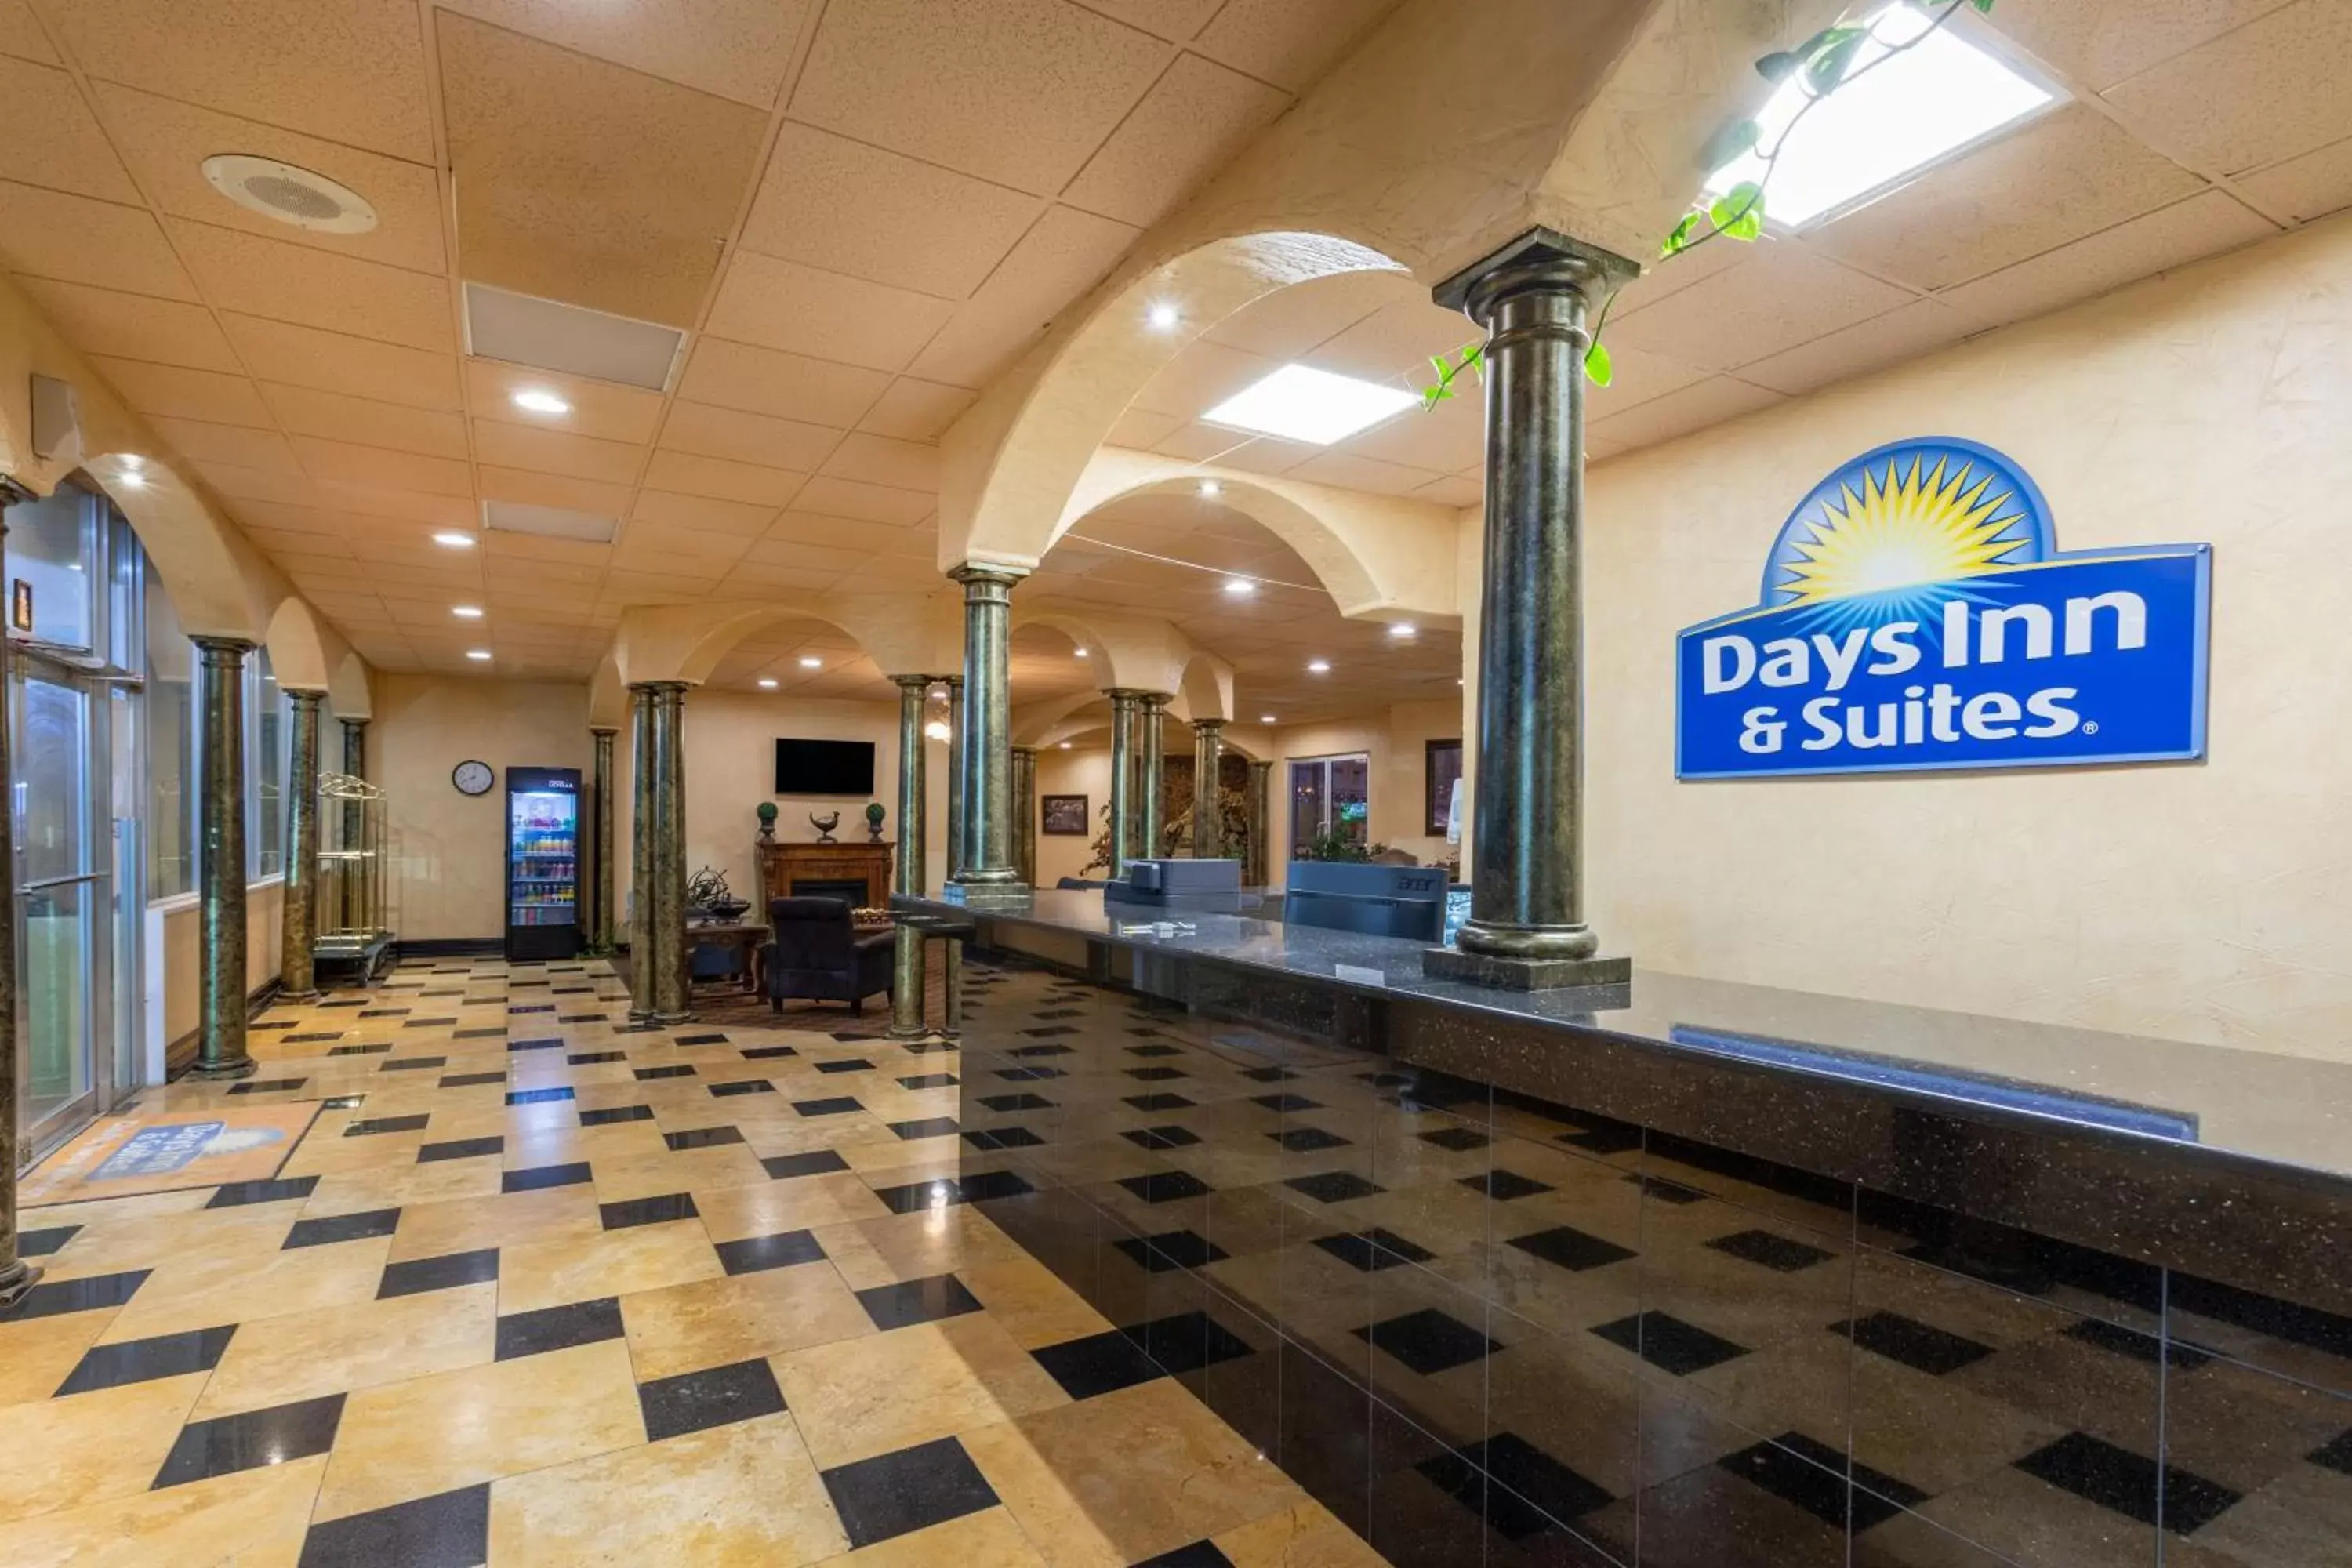 Lobby or reception in Days Inn & Suites by Wyndham Clovis